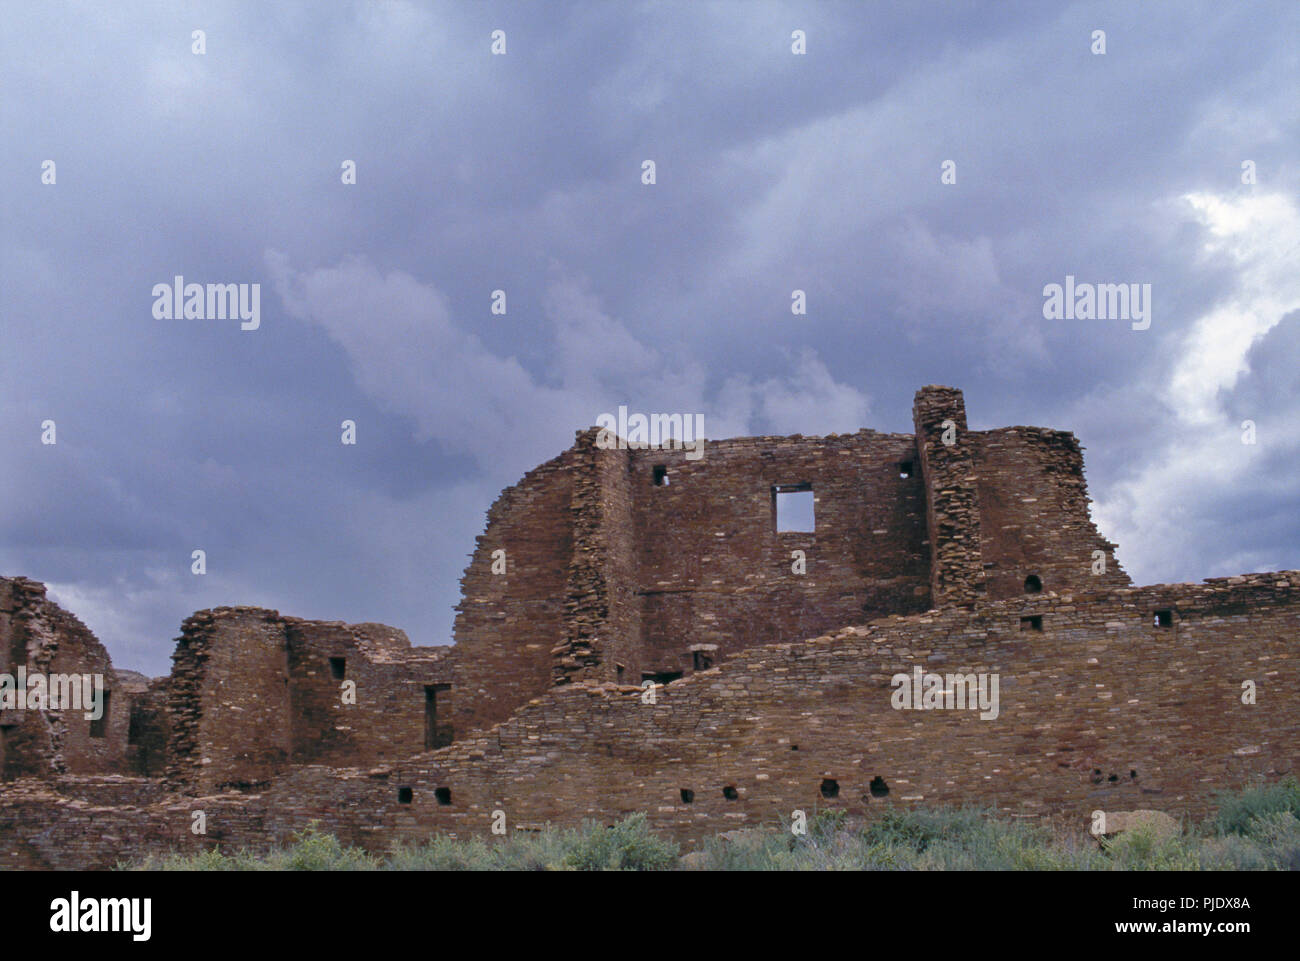 Ruines Anasazi de Pueblo Bonito, Chaco Canyon, Nouveau Mexique. Photographie Banque D'Images